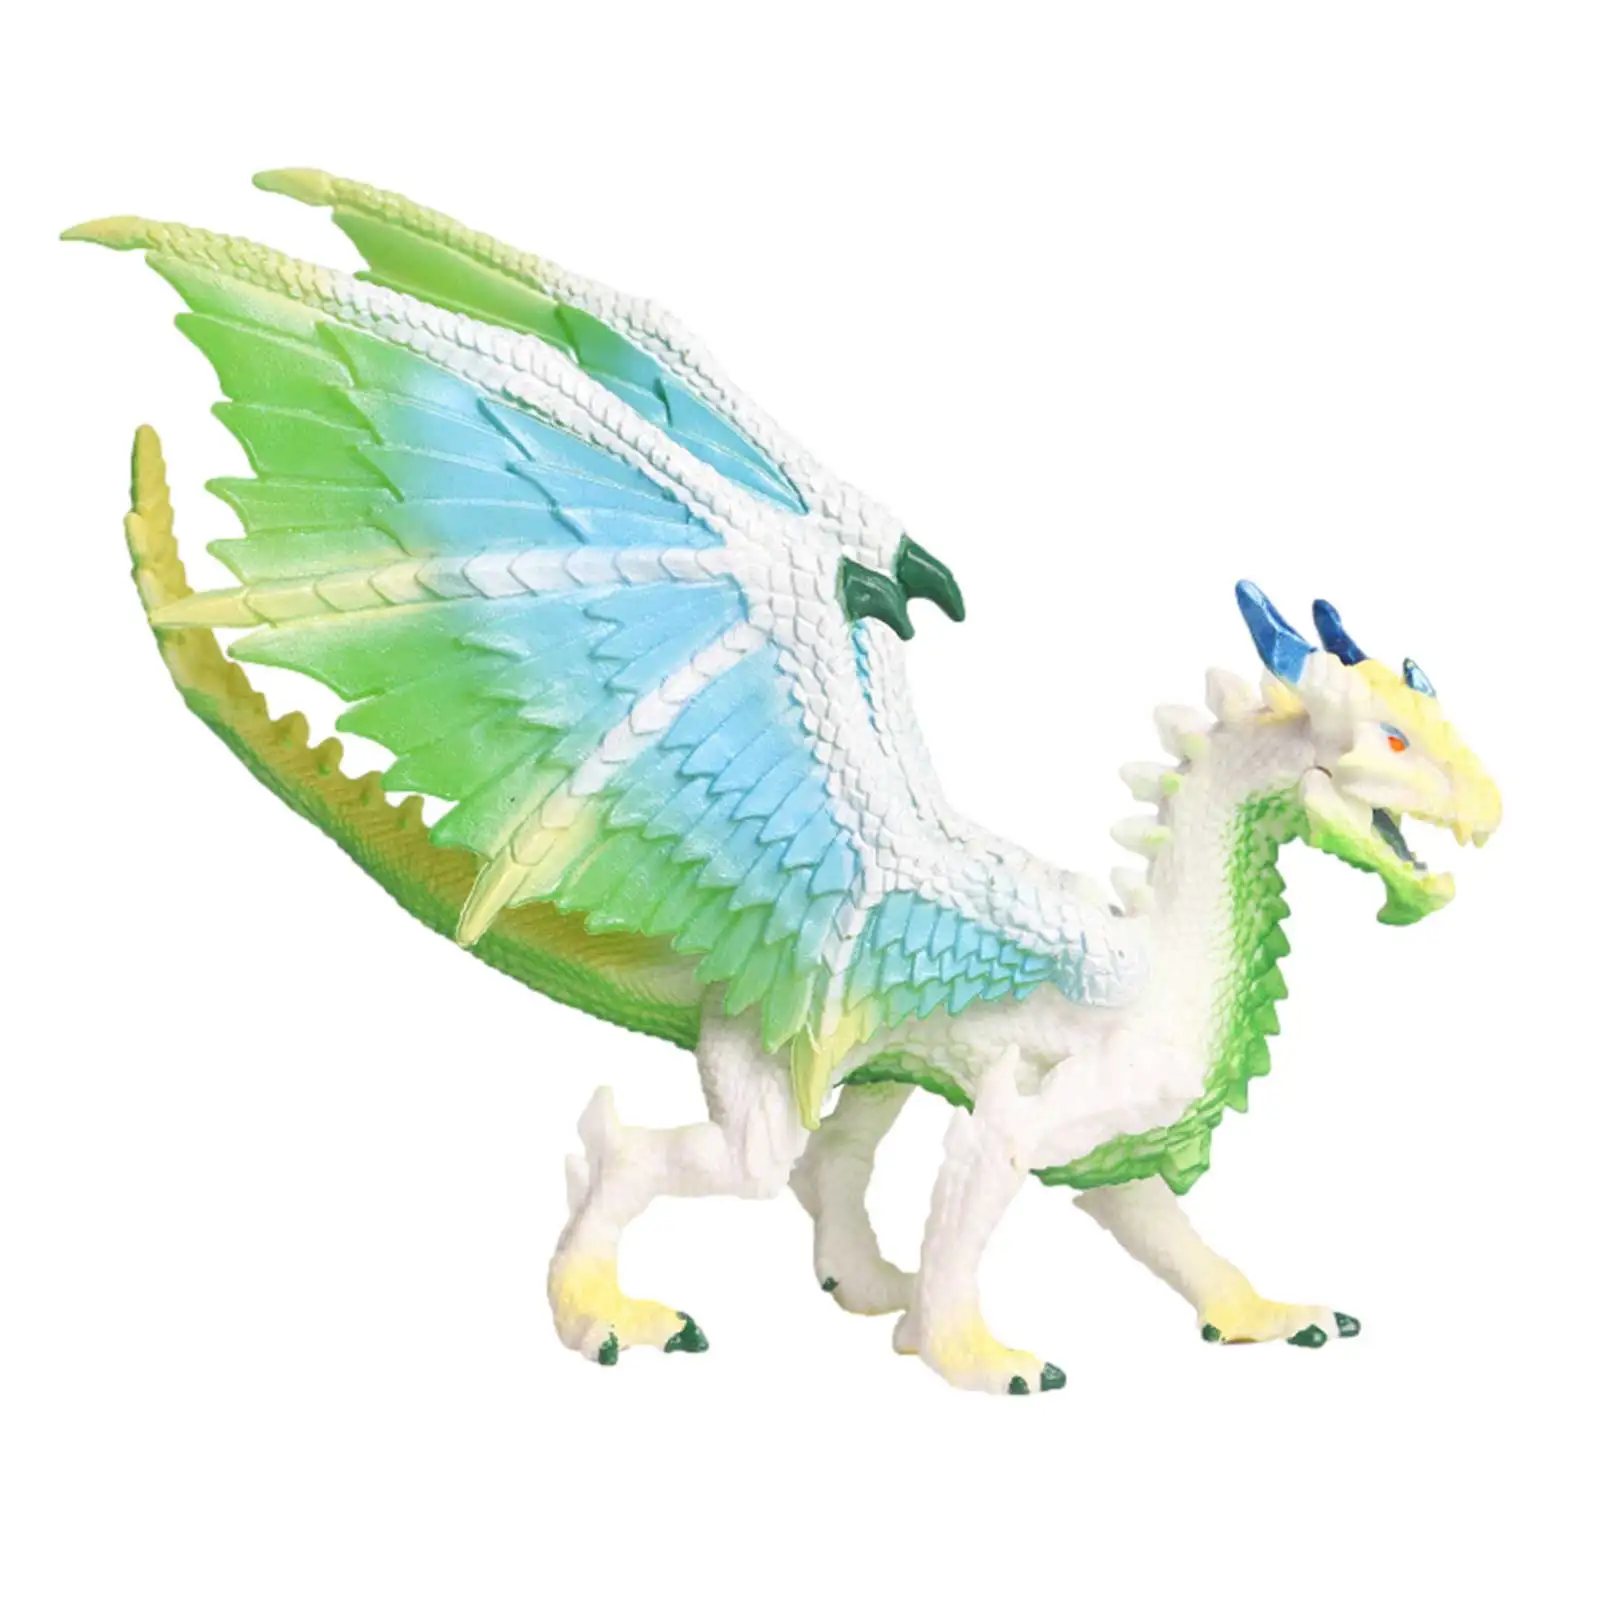 

Игрушка ледяной дракон, летающий волшебный дракон, динозавры, экшн-фигурки, модель китайского дракона, ПВХ Коллекция, детская игрушка, имита...